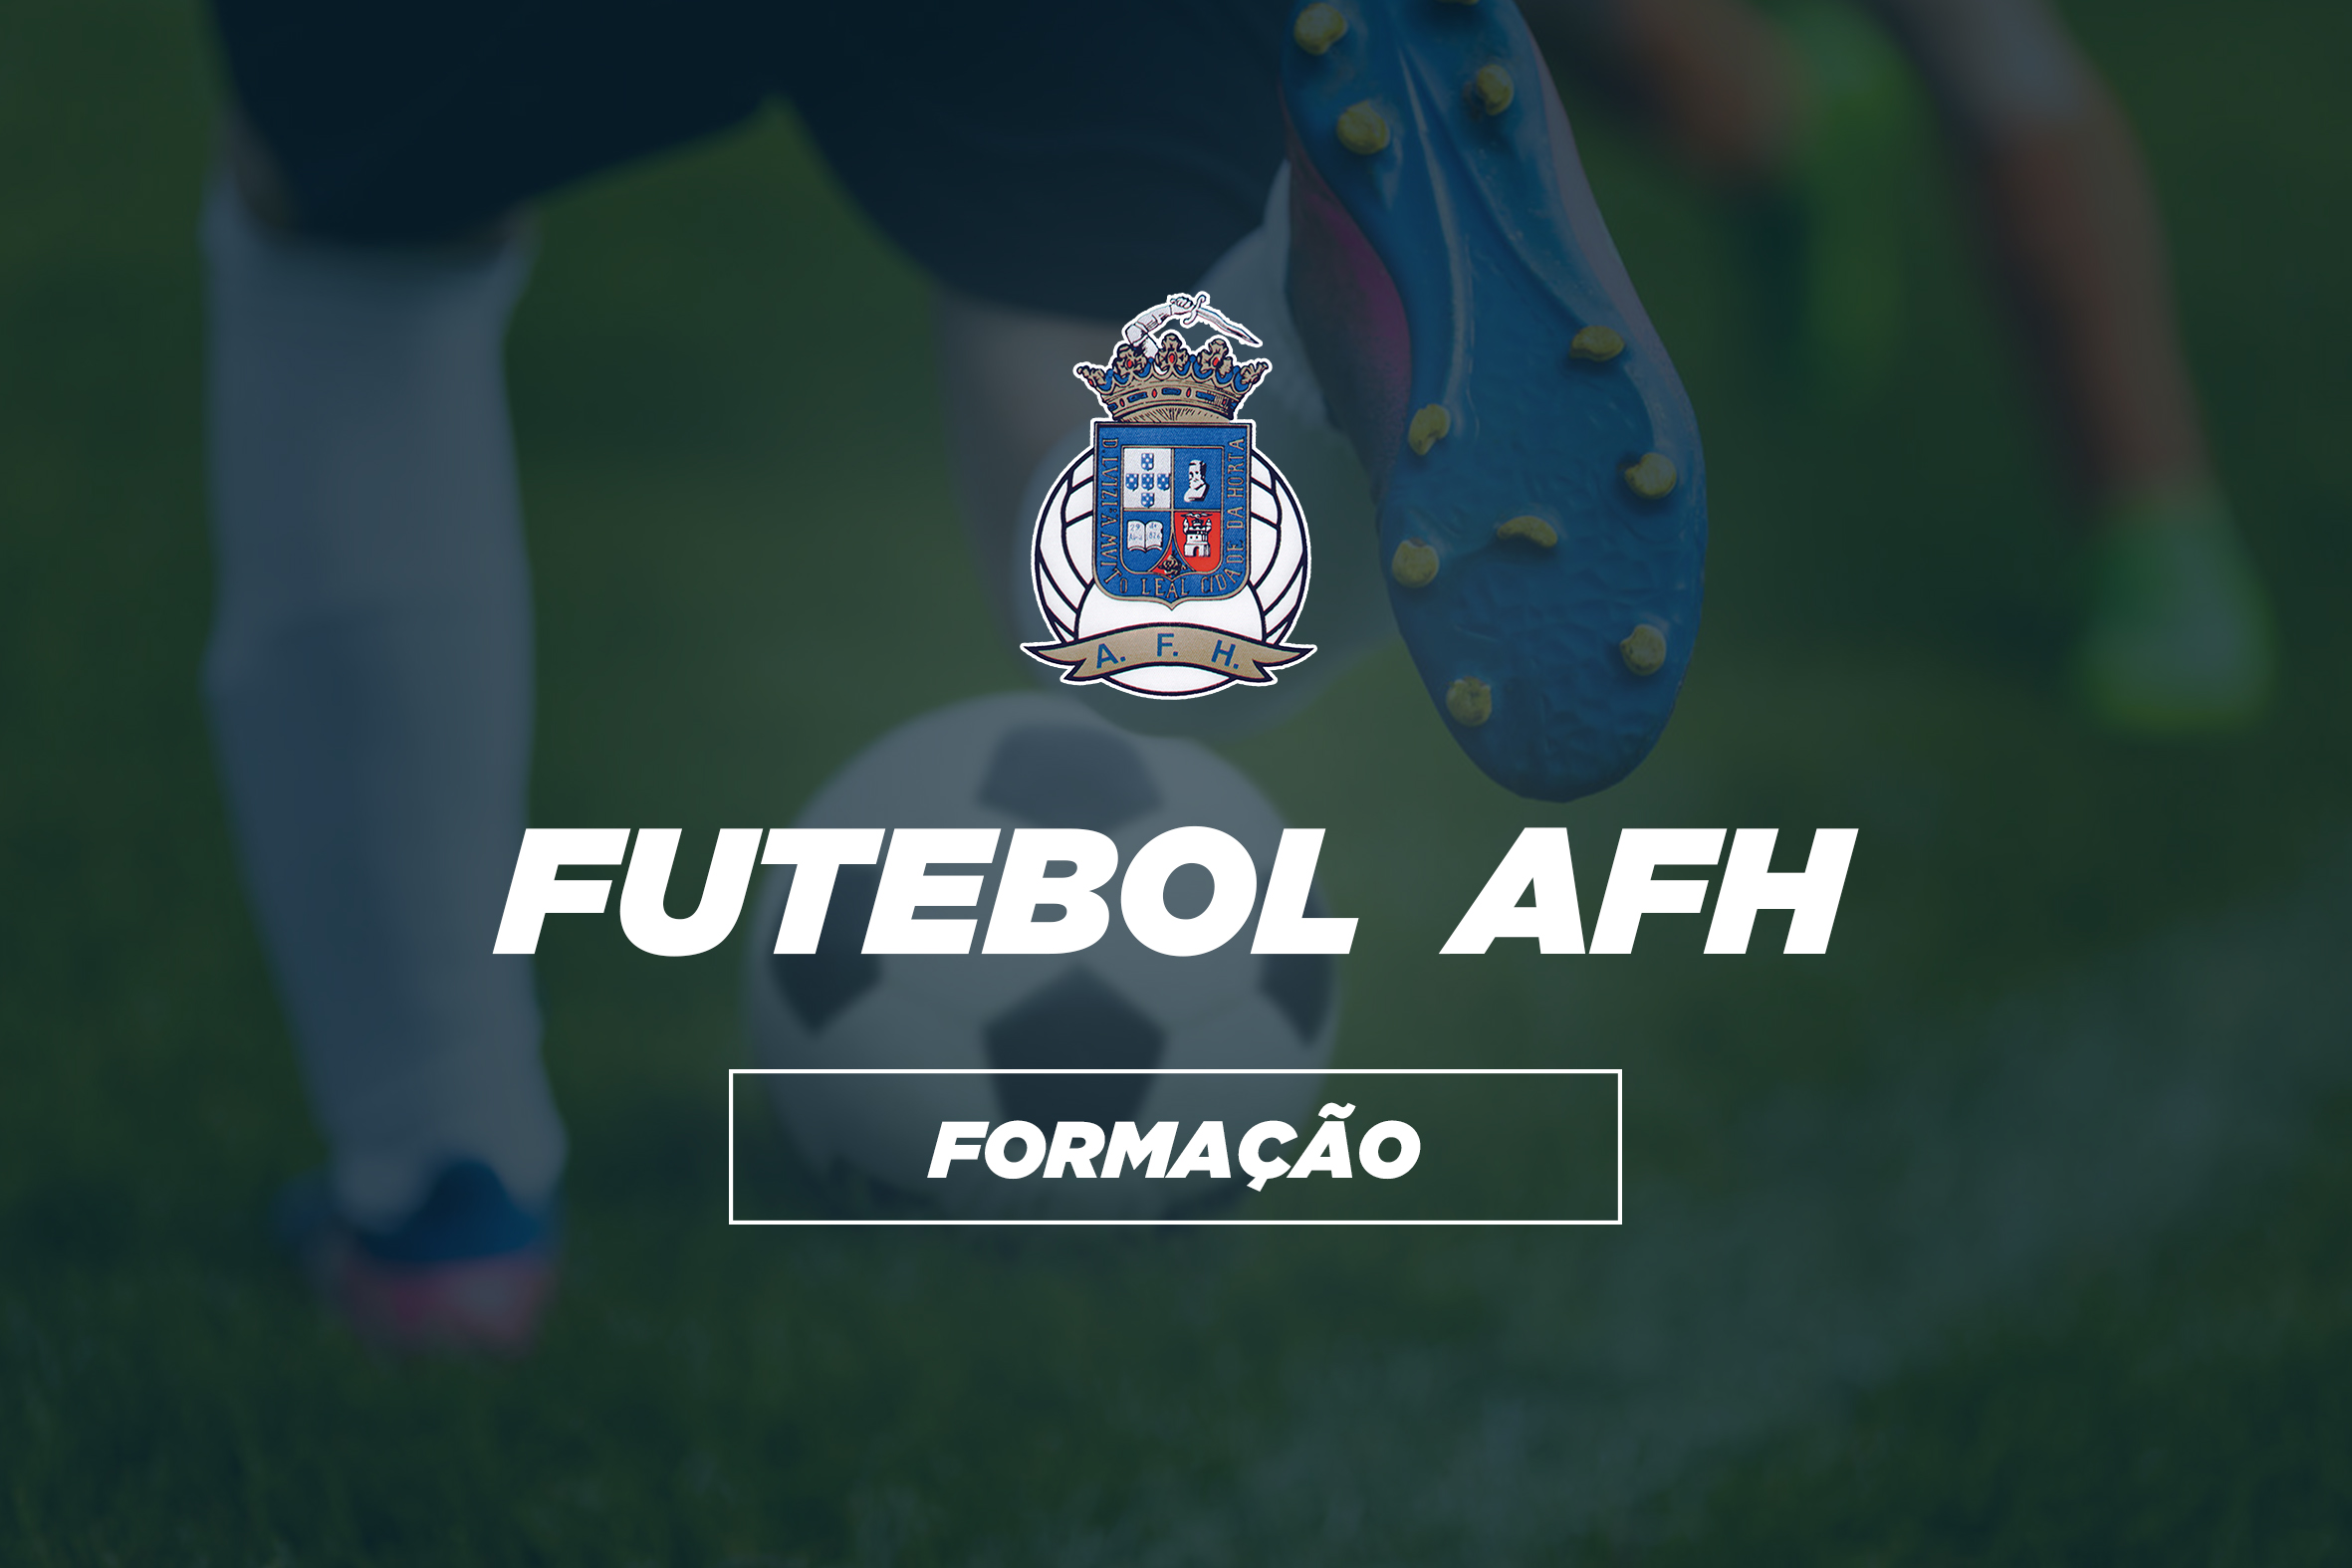 Competições AFH | Resultados Formação - Futebol